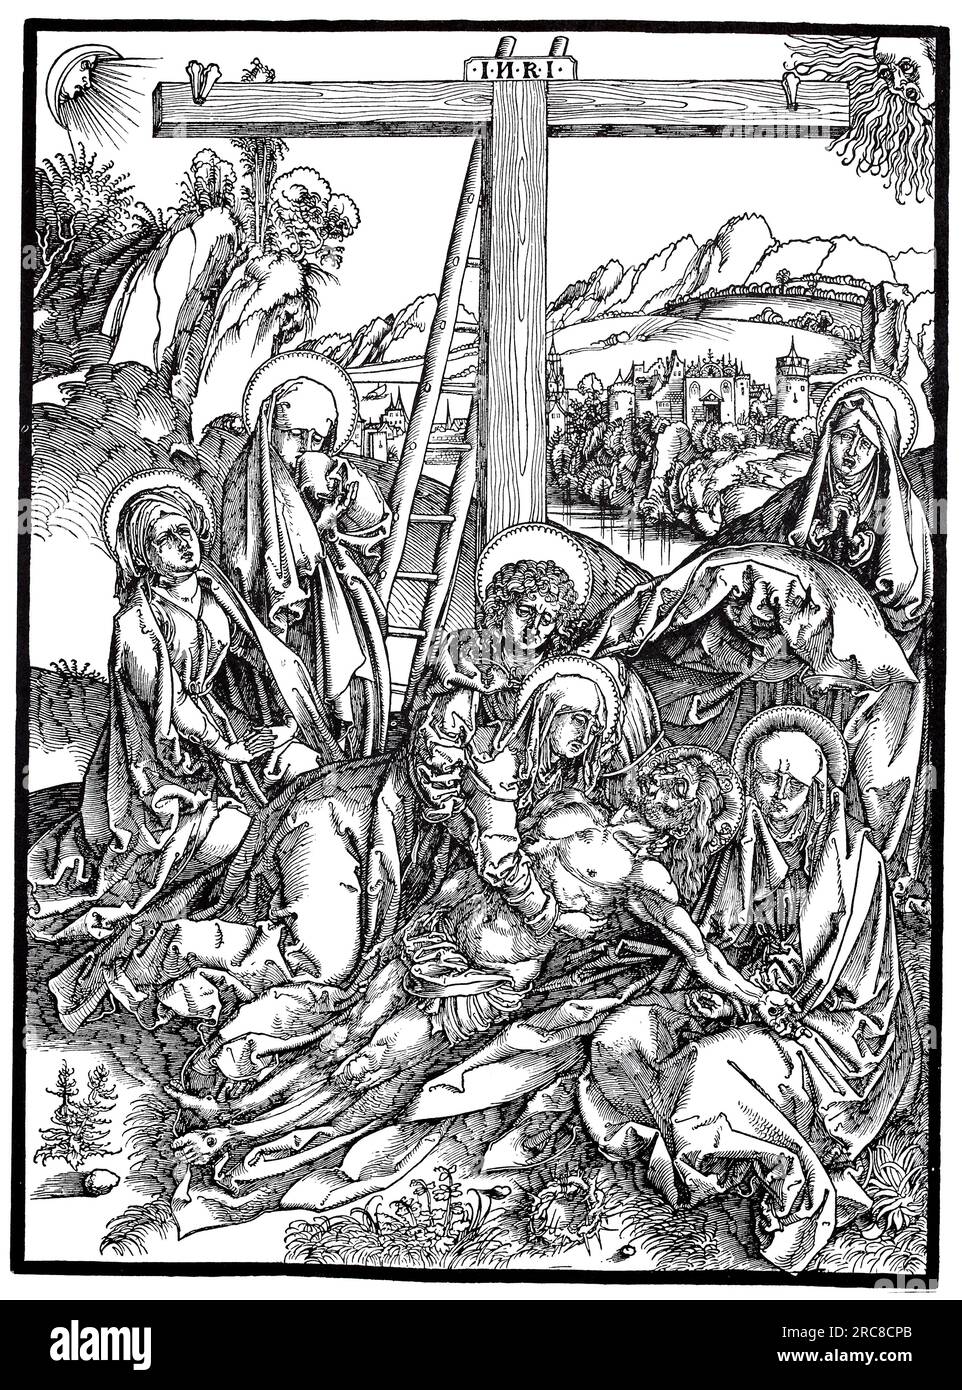 Lamentation for Christ, Woodcut di Albrecht Dürer, storica, digitale, riproduzione migliorata di un vecchio taglio di legno Foto Stock